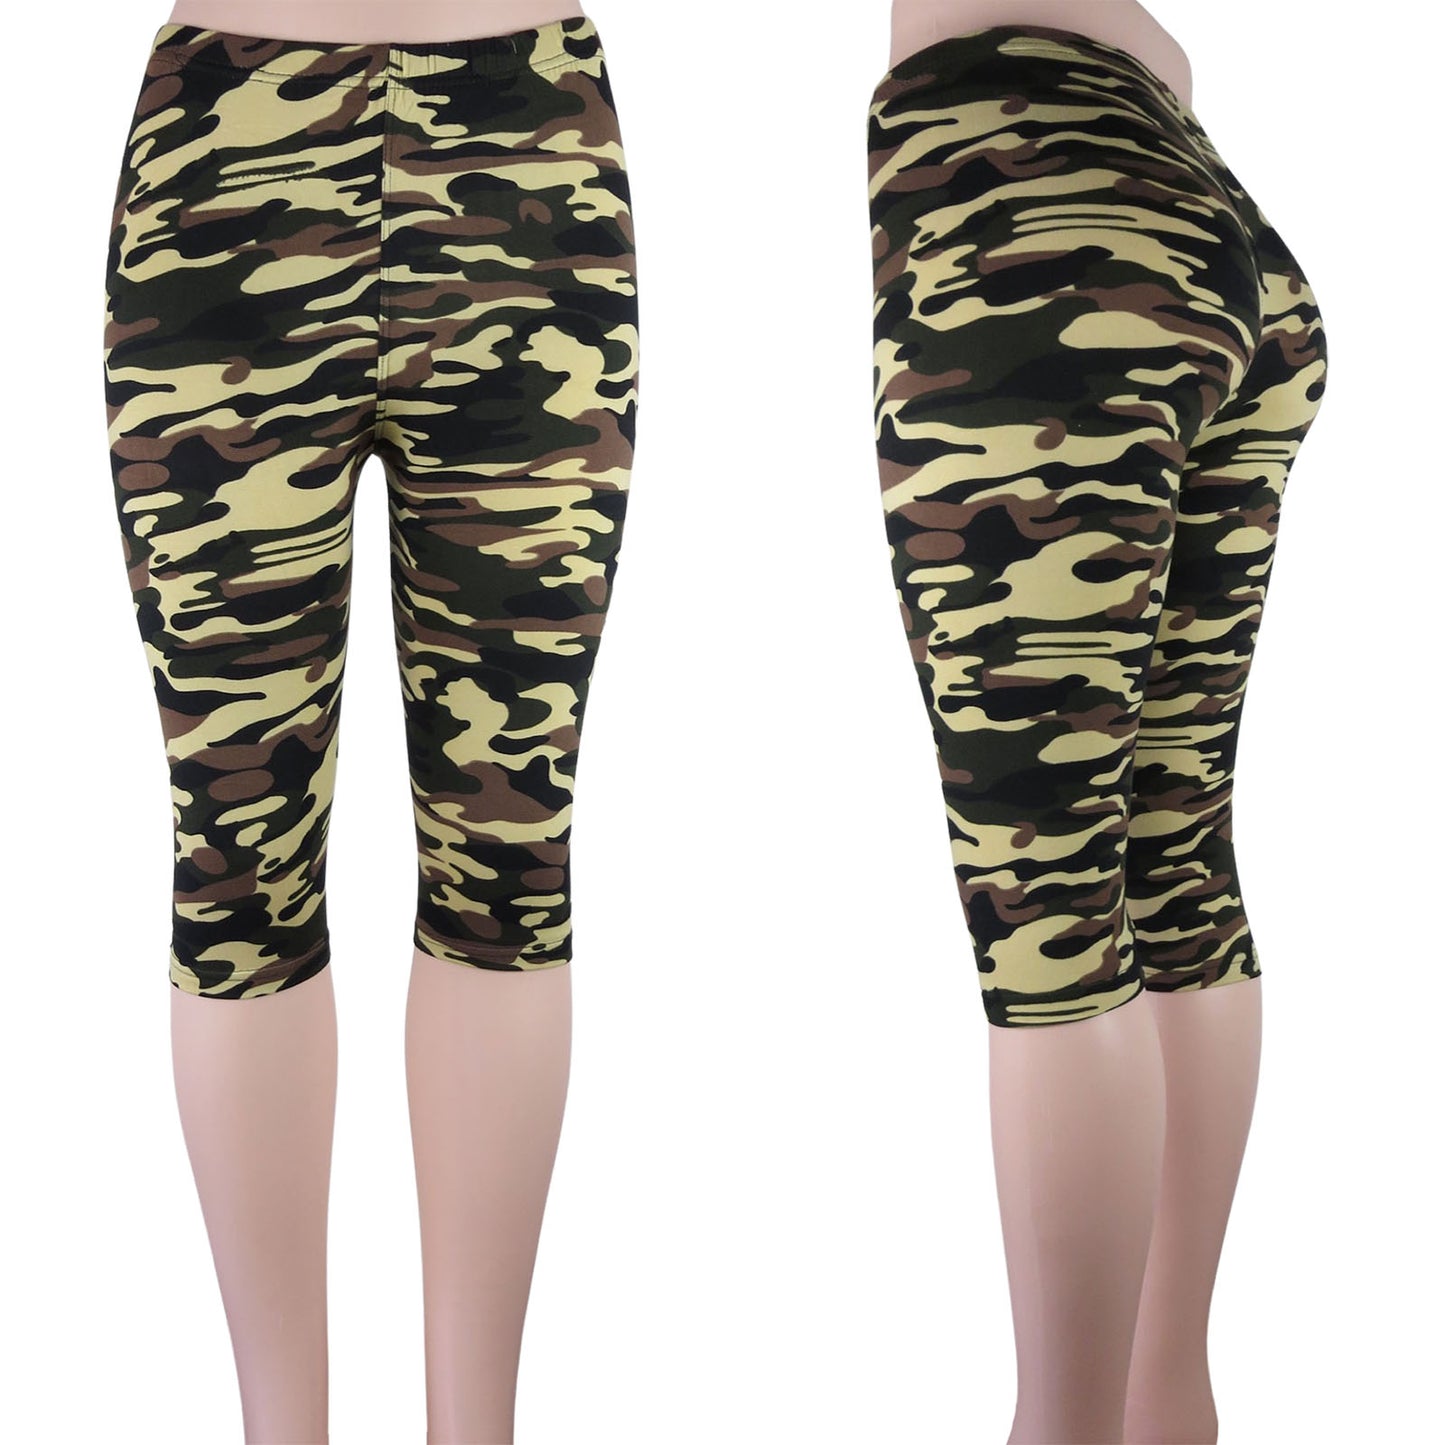 capri camouflage  leggings in multicolor camo prints wholesale 